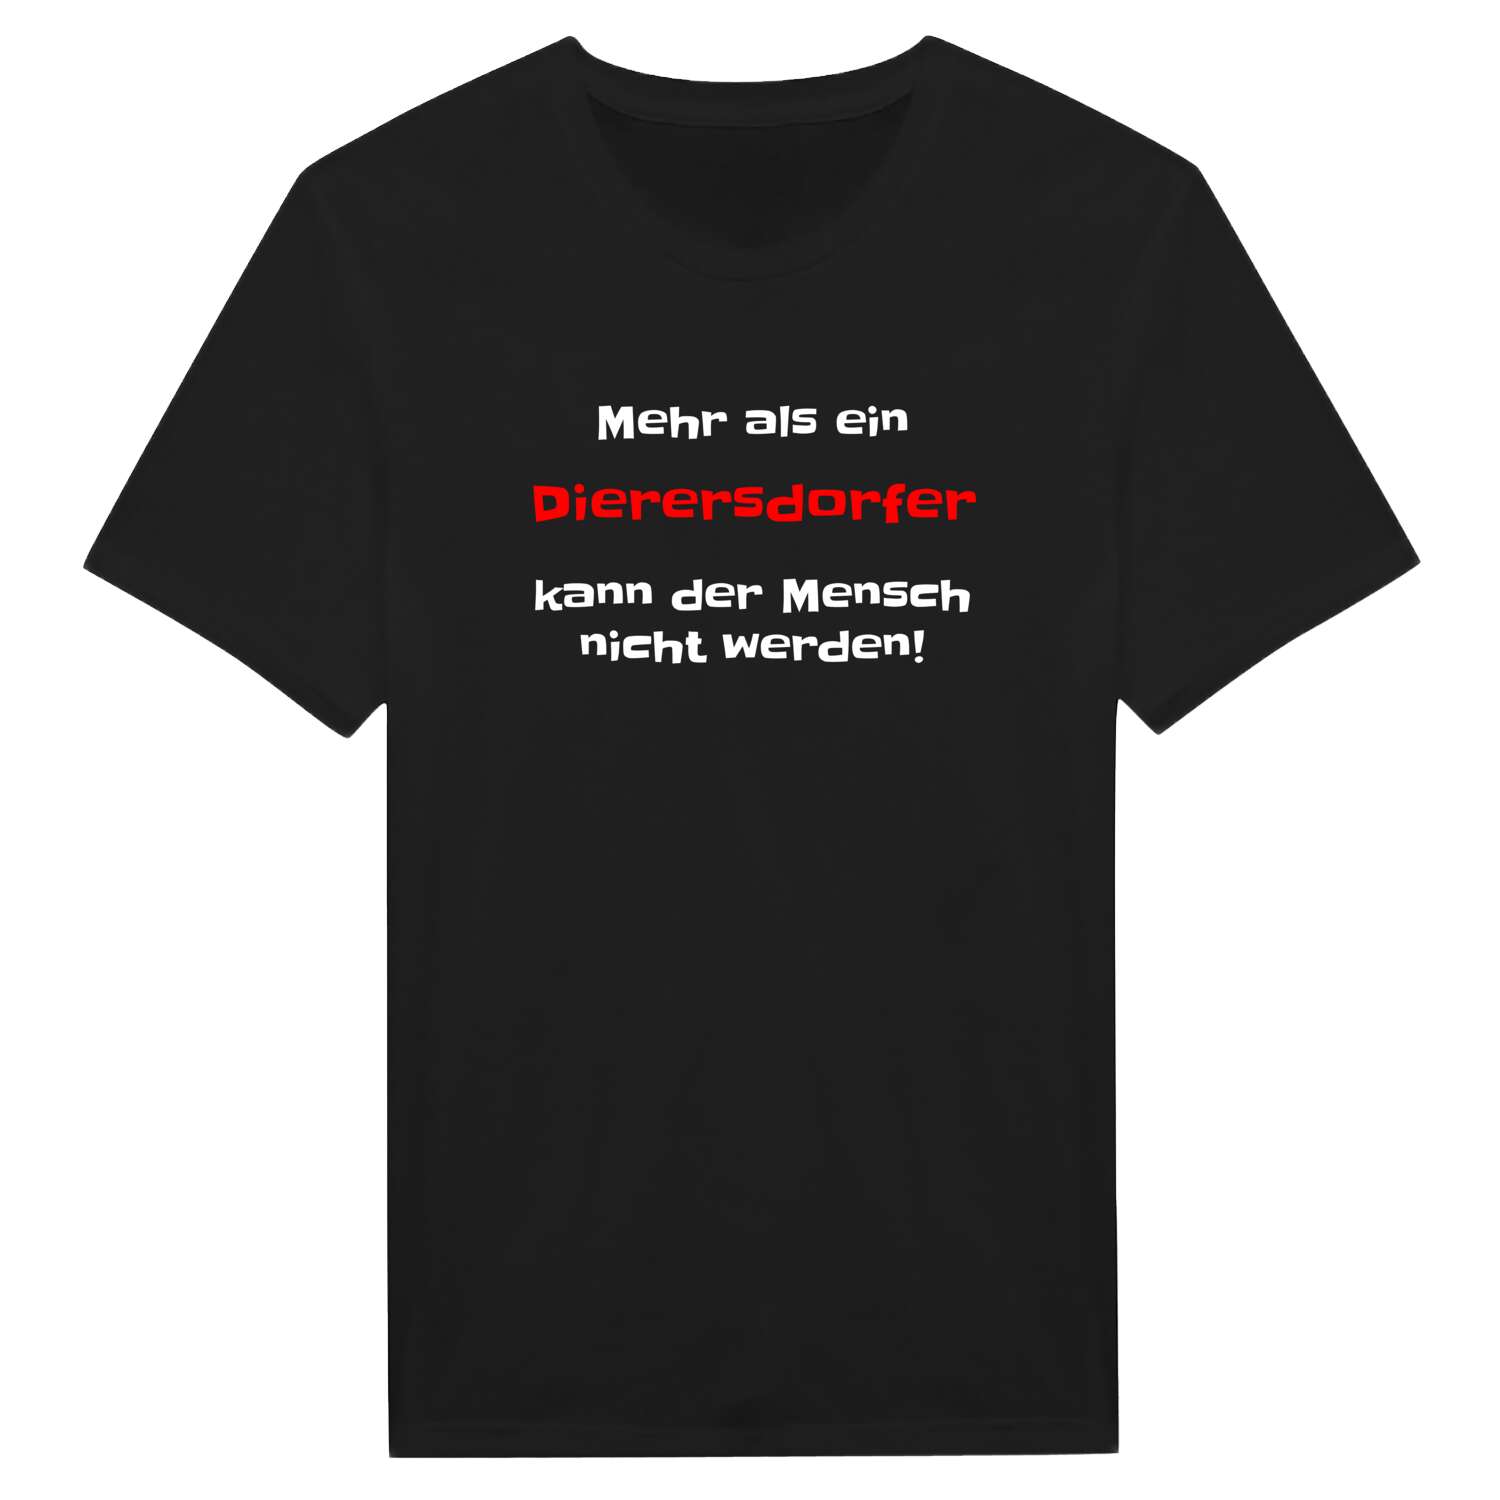 Dierersdorf T-Shirt »Mehr als ein«